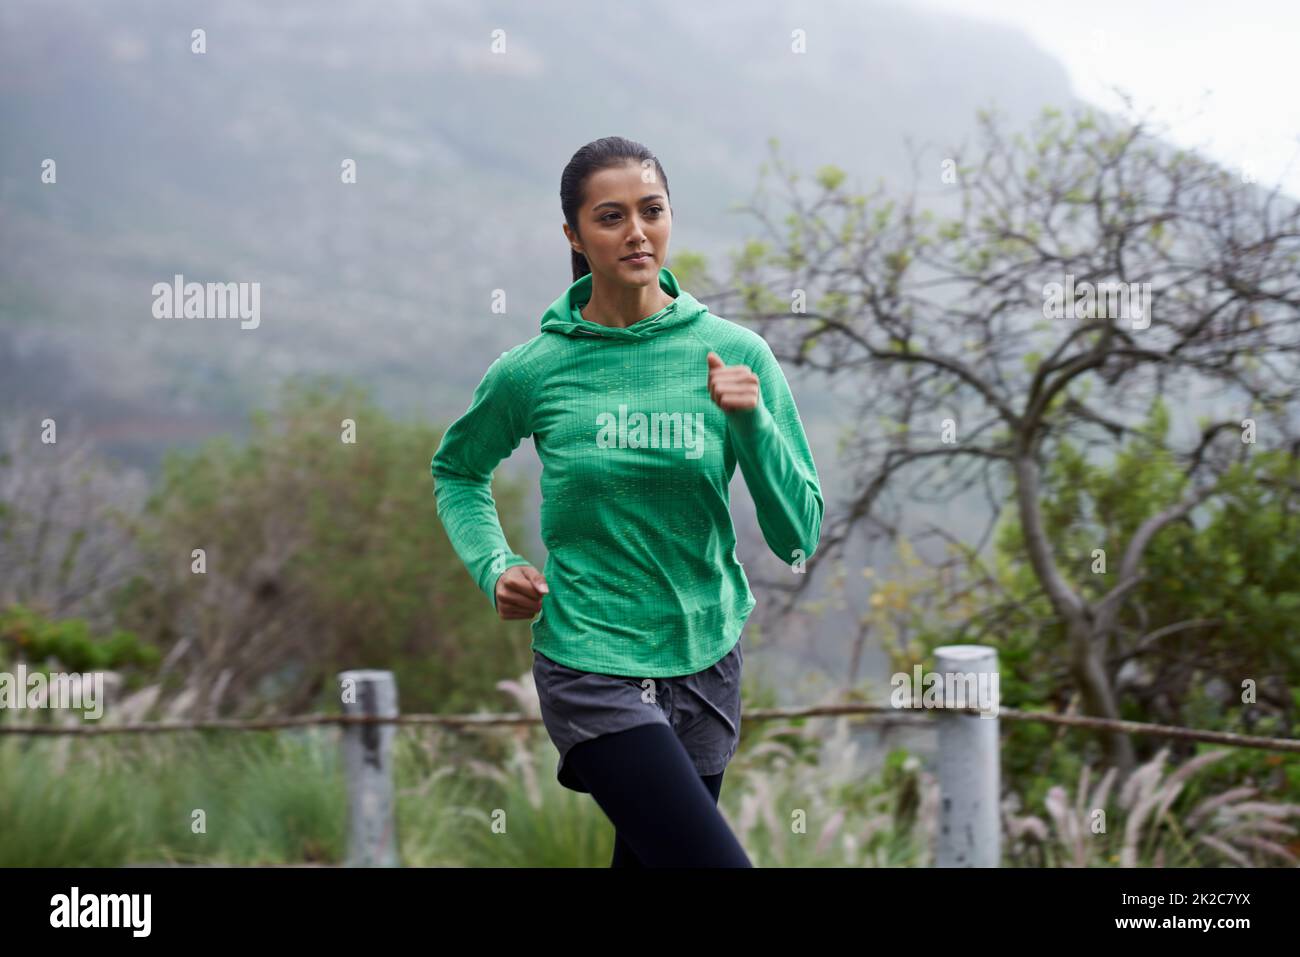 Sie schreitet jeden Tag in ihrer Fitness voran. Eine junge Frau sprintet an einem frischen Morgen entlang einer Bergstraße. Stockfoto